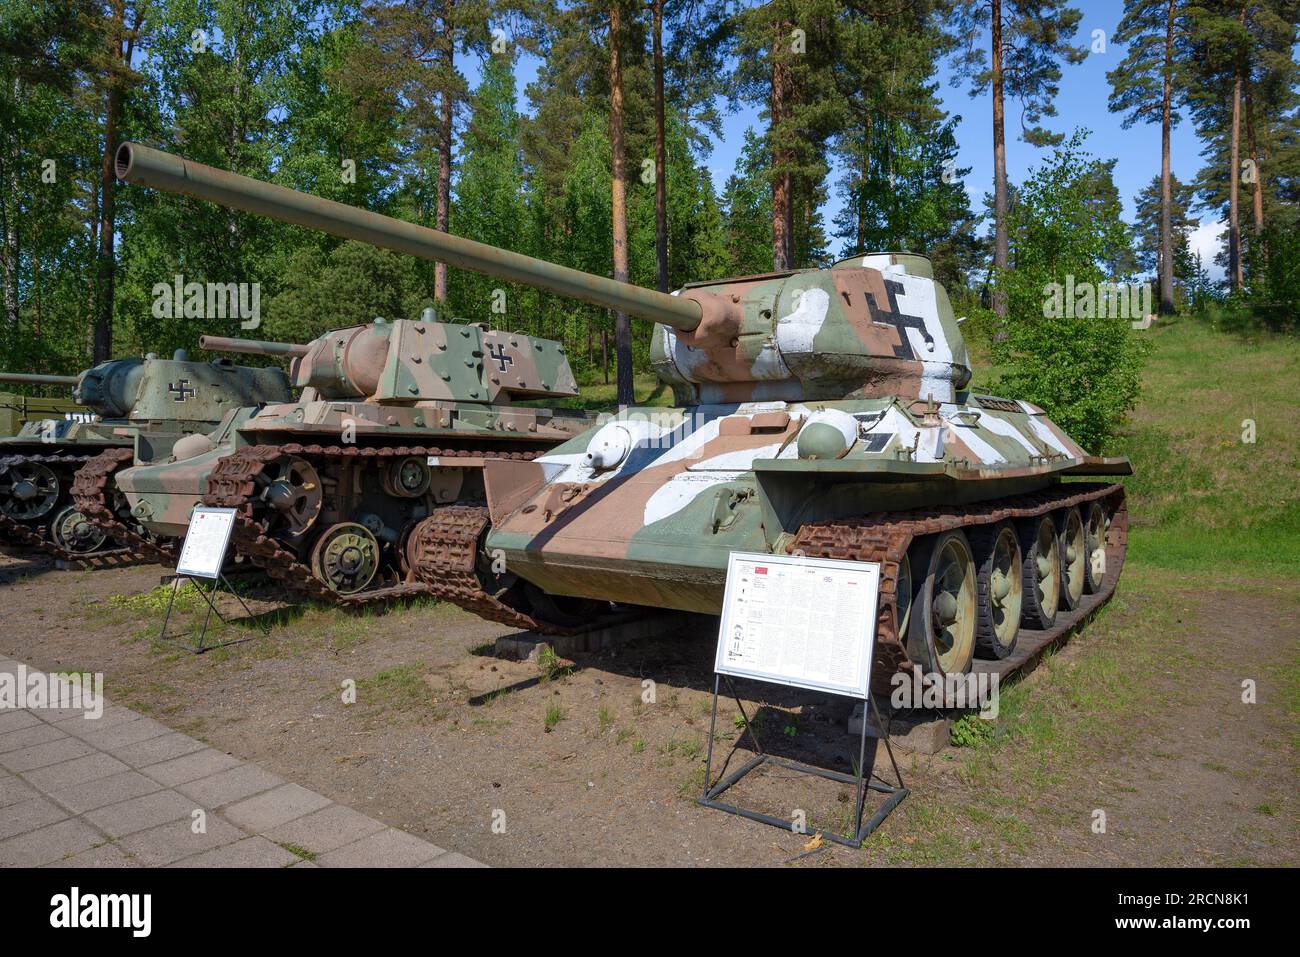 PAROLA, FINNLAND - 10. JUNI 2017: Sowjetischer Panzer T-34-85 in der Färbung der finnischen Armee der Zeit des Zweiten Weltkriegs in der Straßenausstellung von Stockfoto